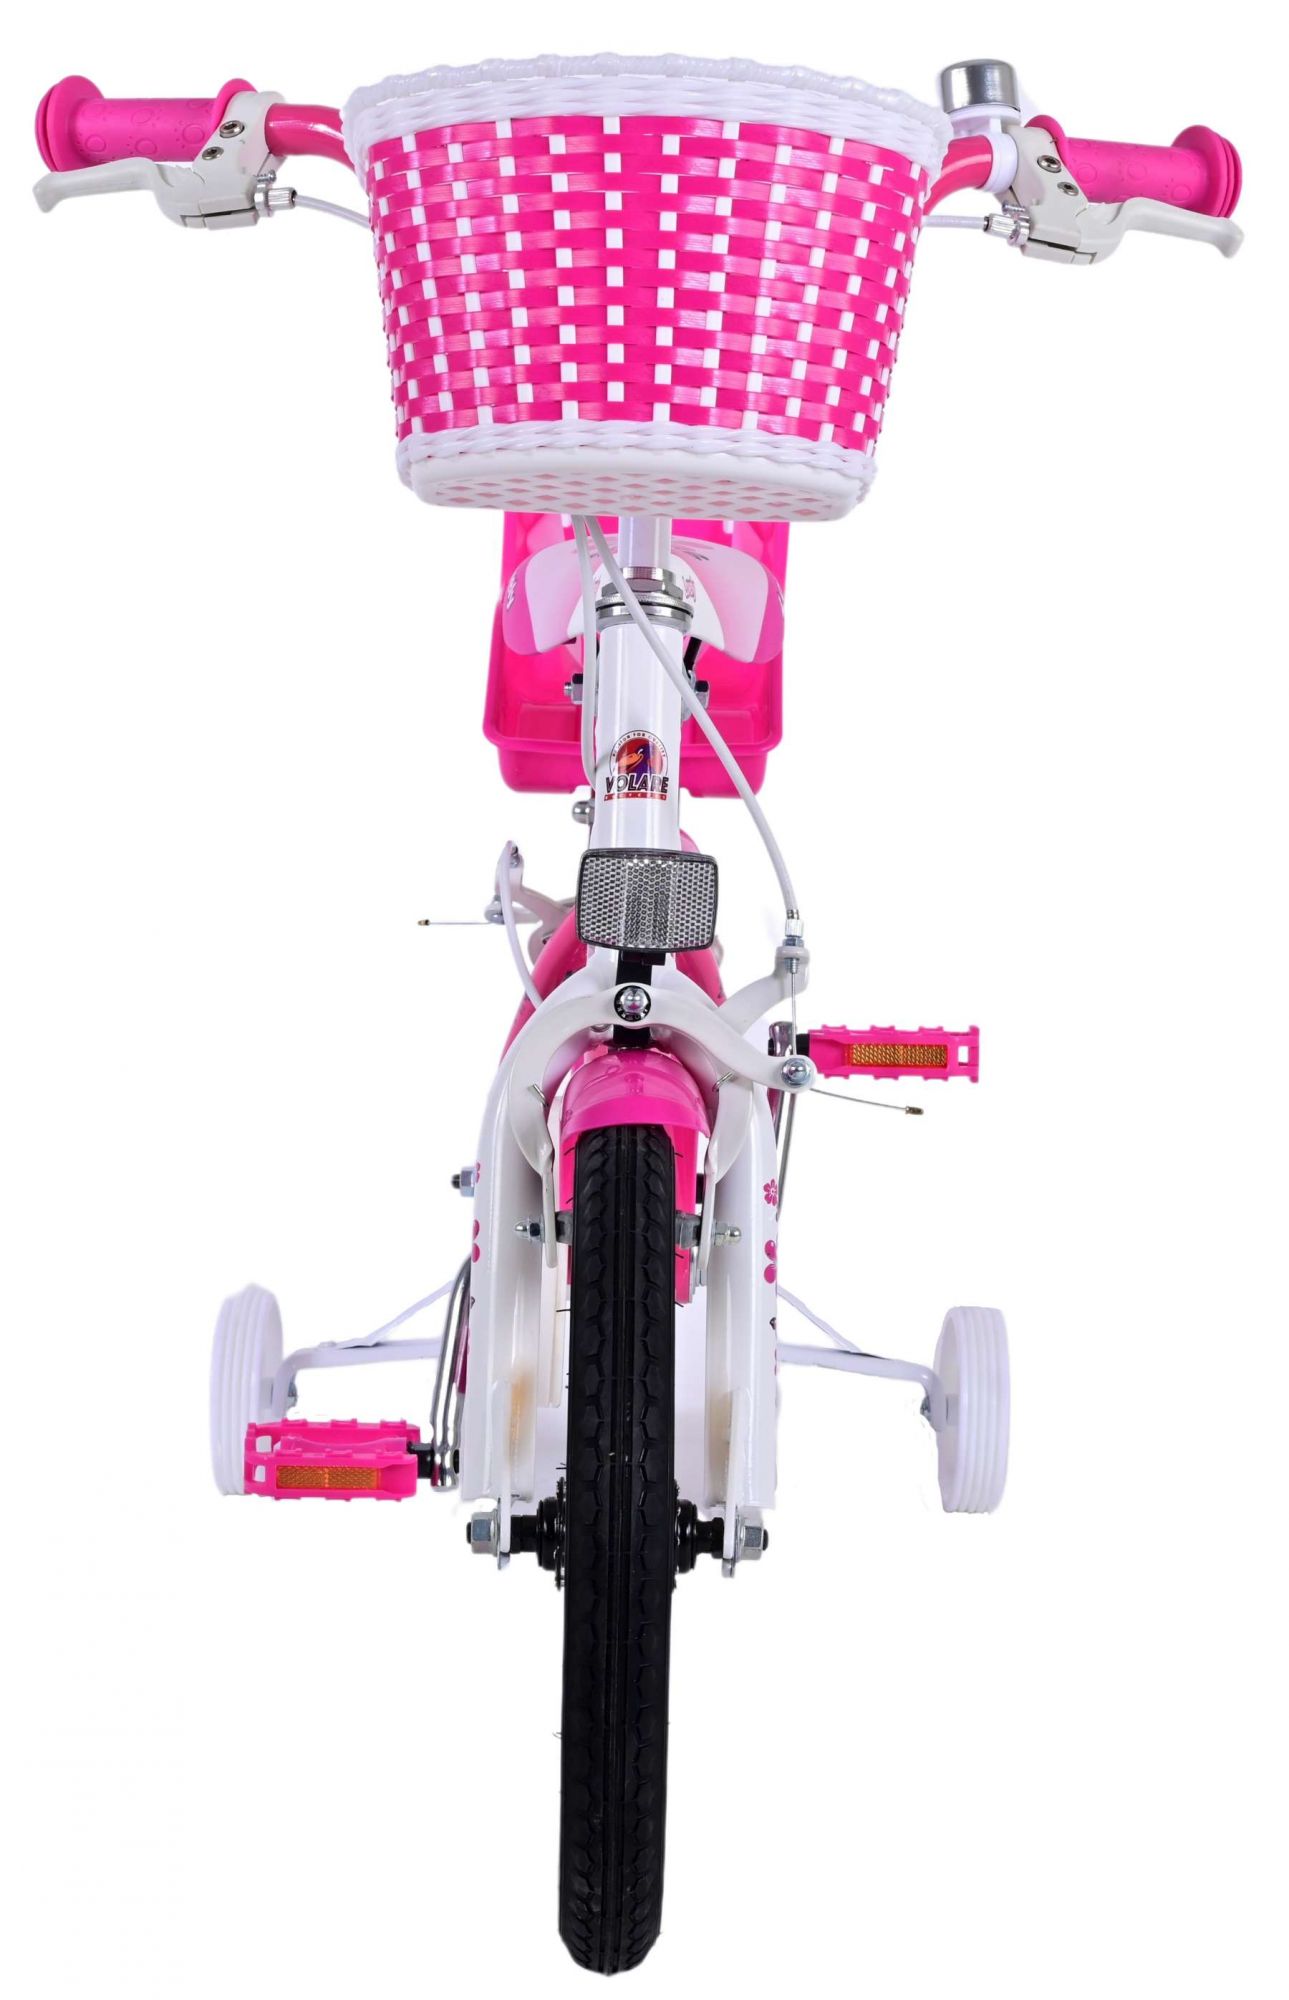 Kinderfahrrad Lovely für Mädchen 14 Zoll Kinderrad Rosa Weiß Fahrrad